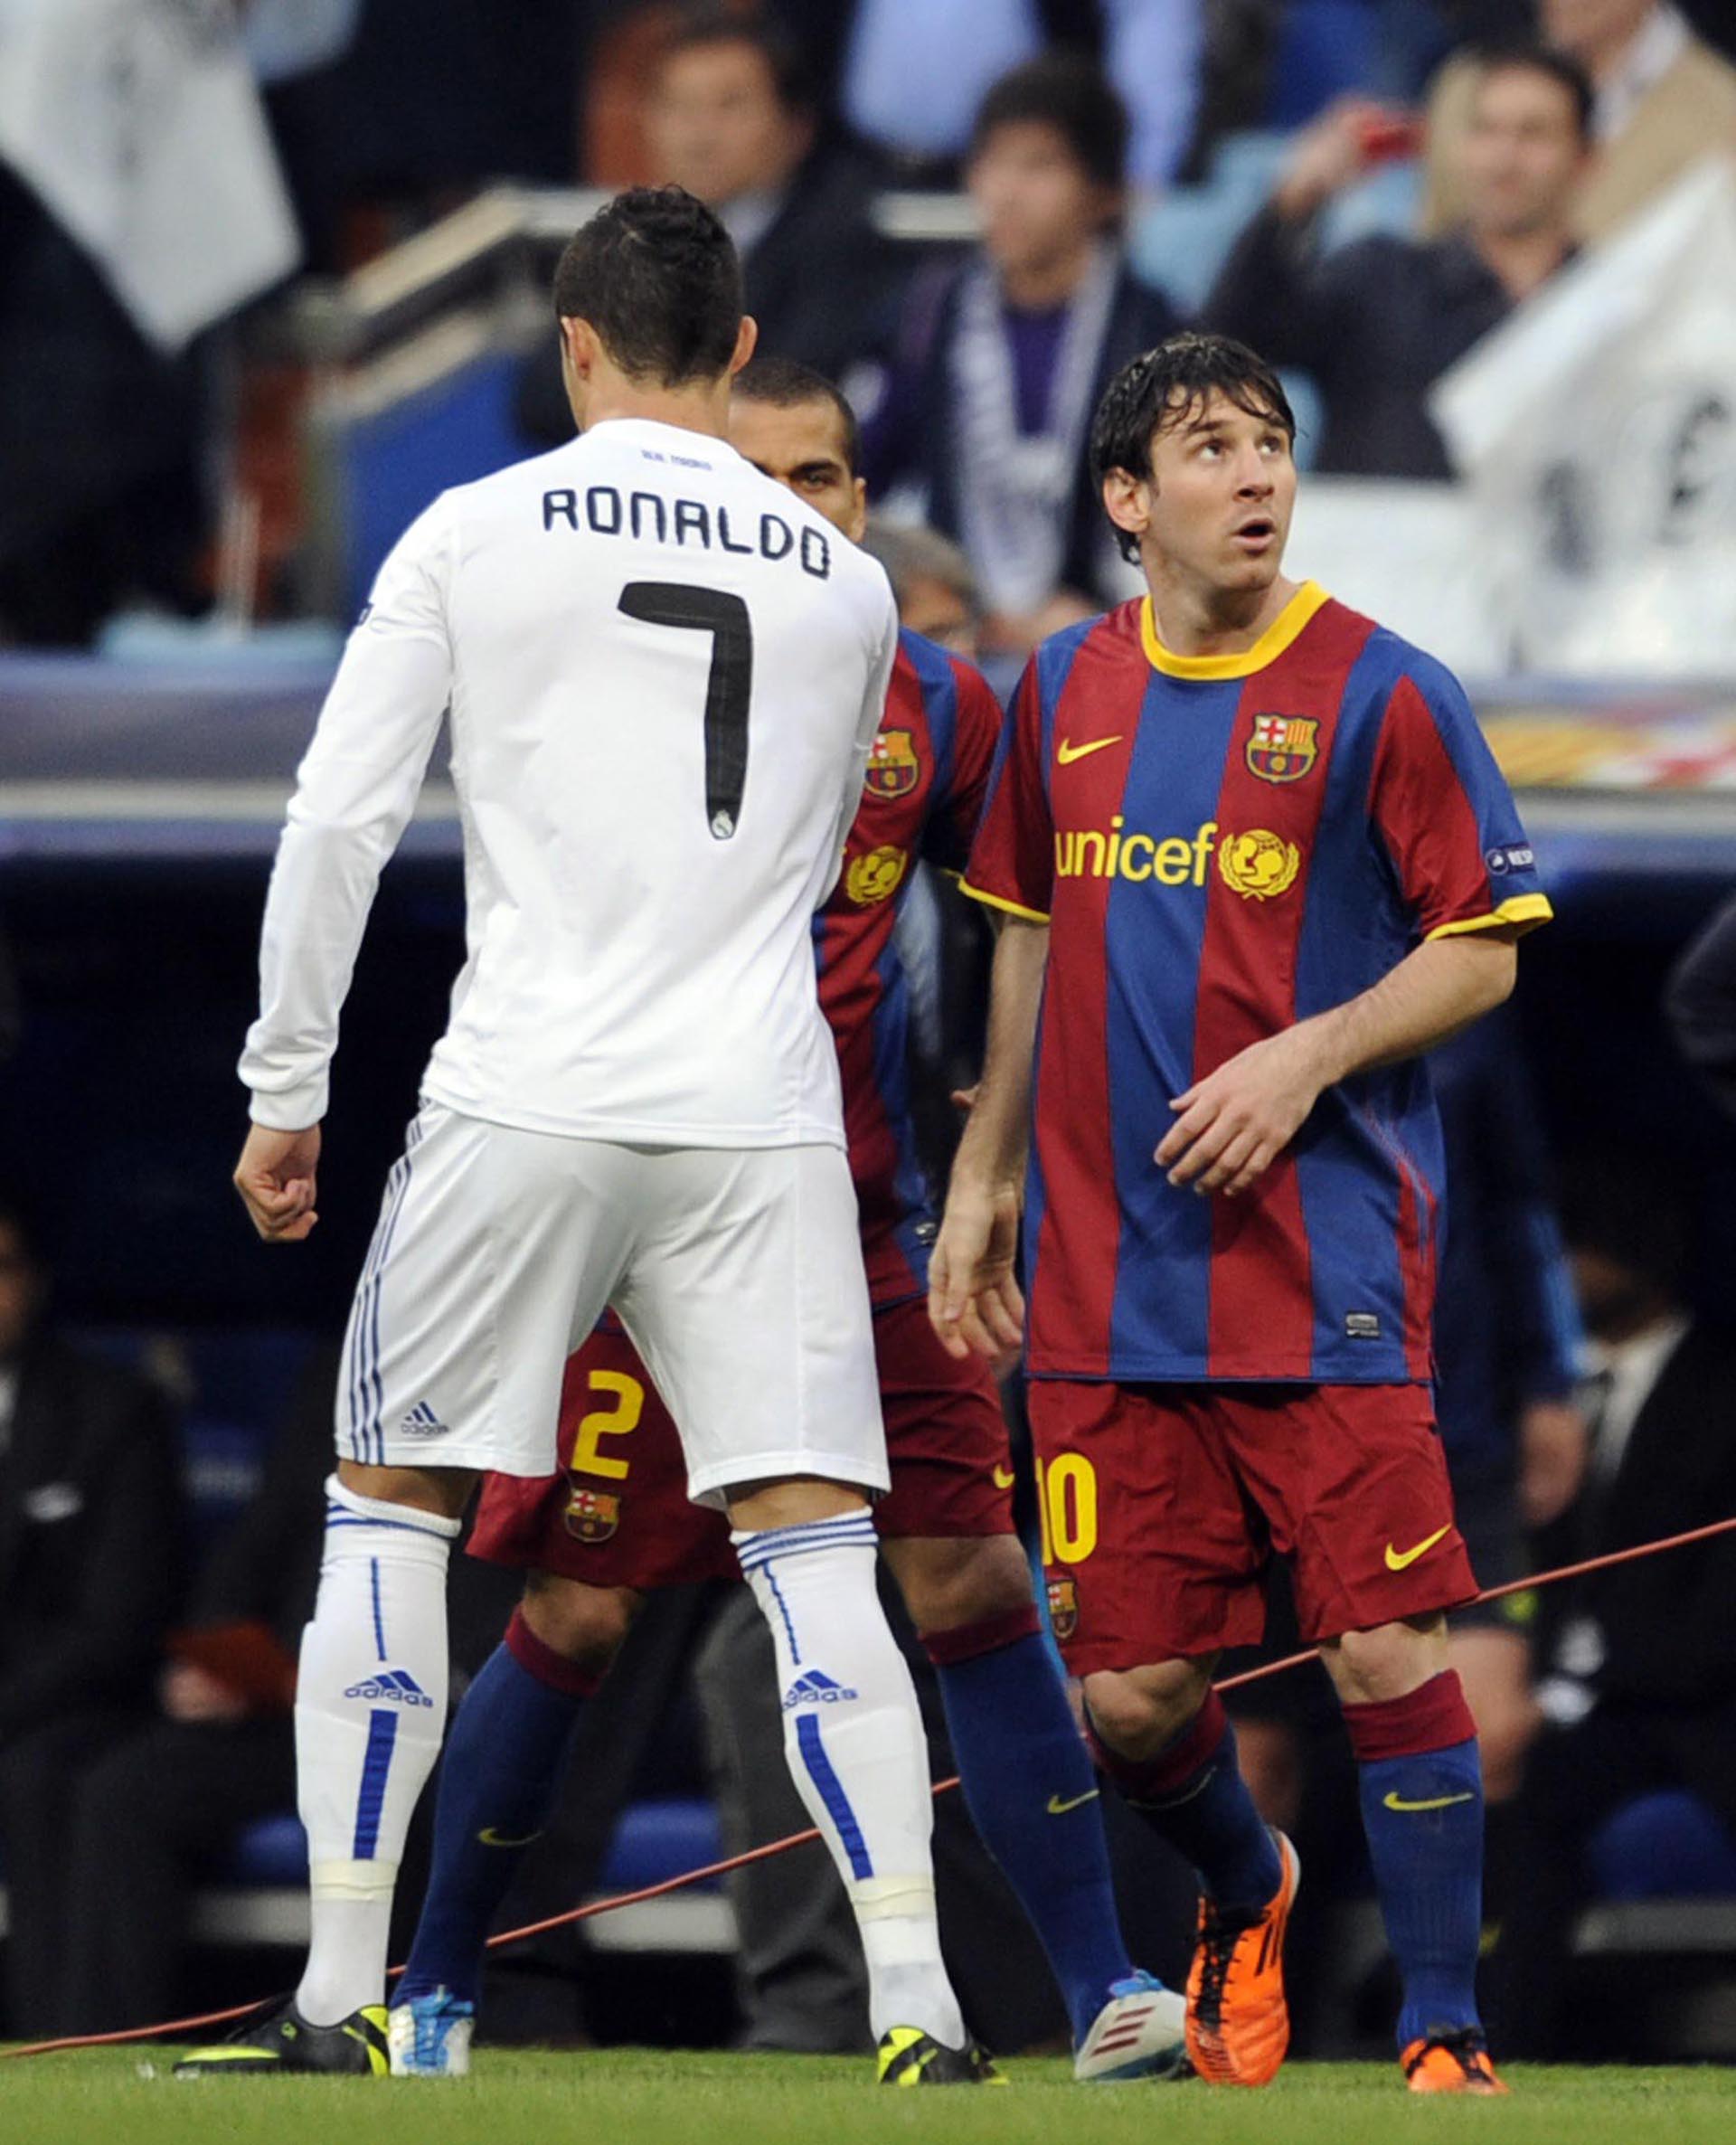 La foto de Lionel Messi y Cristiano Ronaldo que generó impacto